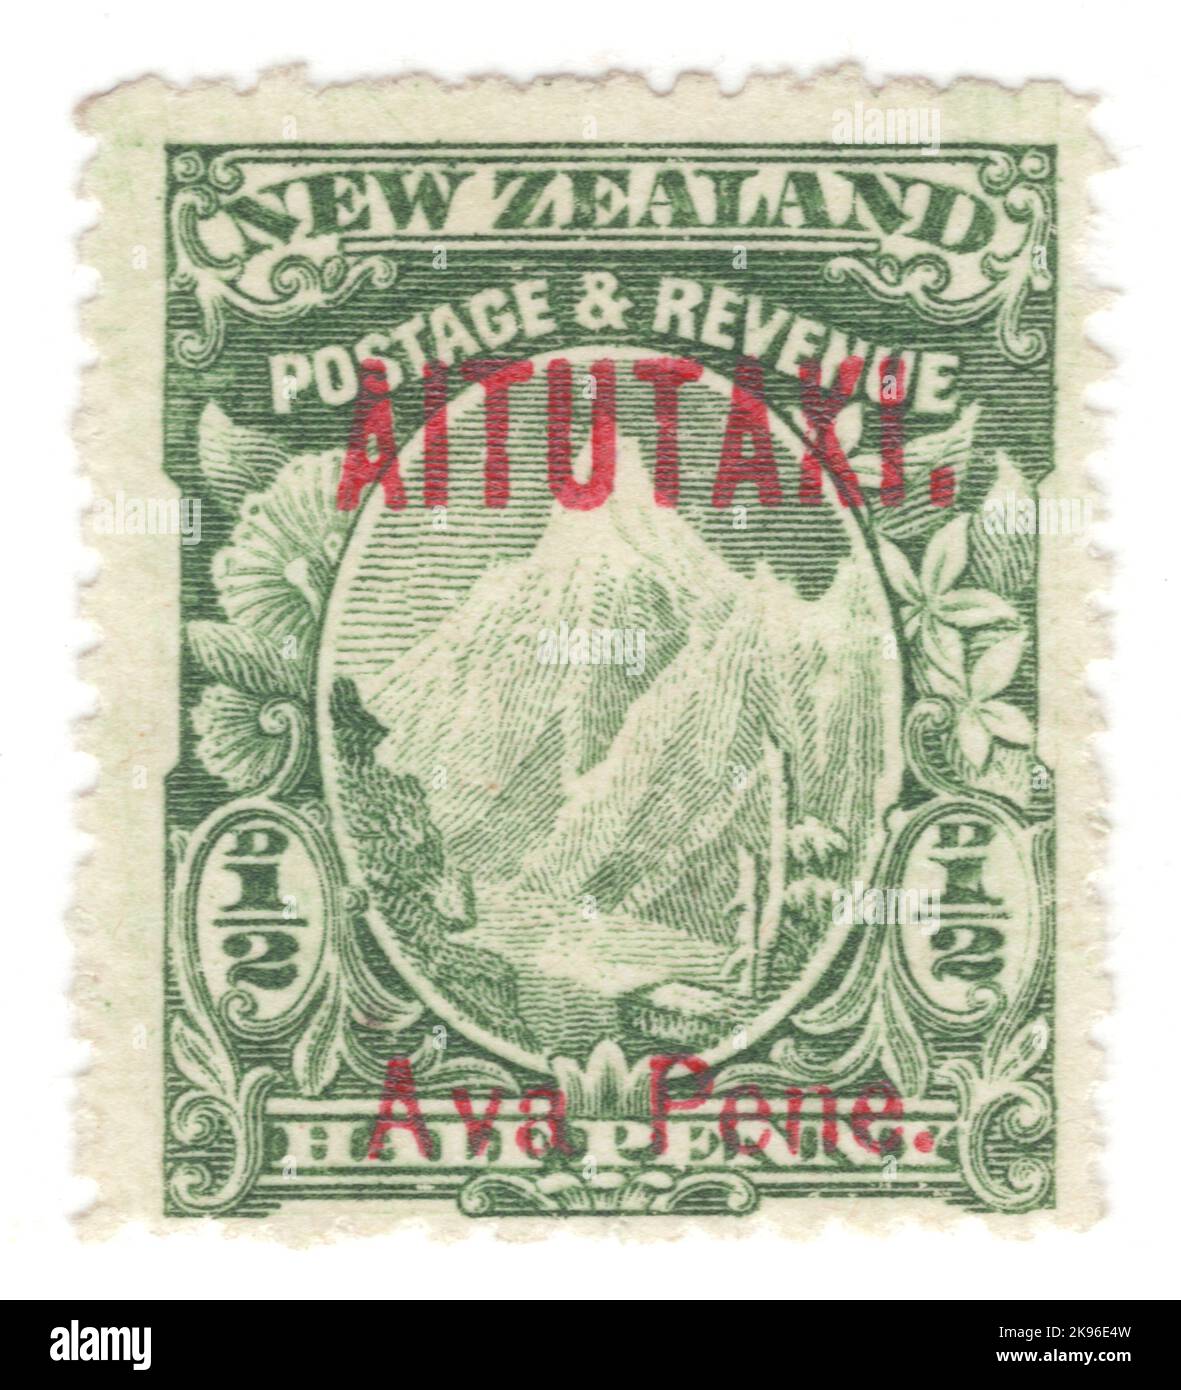 AITUTAKI - VERS 1903 : timbre-poste vert ½ pence représentant le mont Cook. Timbre de la Nouvelle-Zélande surimprimé 'AITUTAKI' et valeur en langue maternelle en rouge Banque D'Images